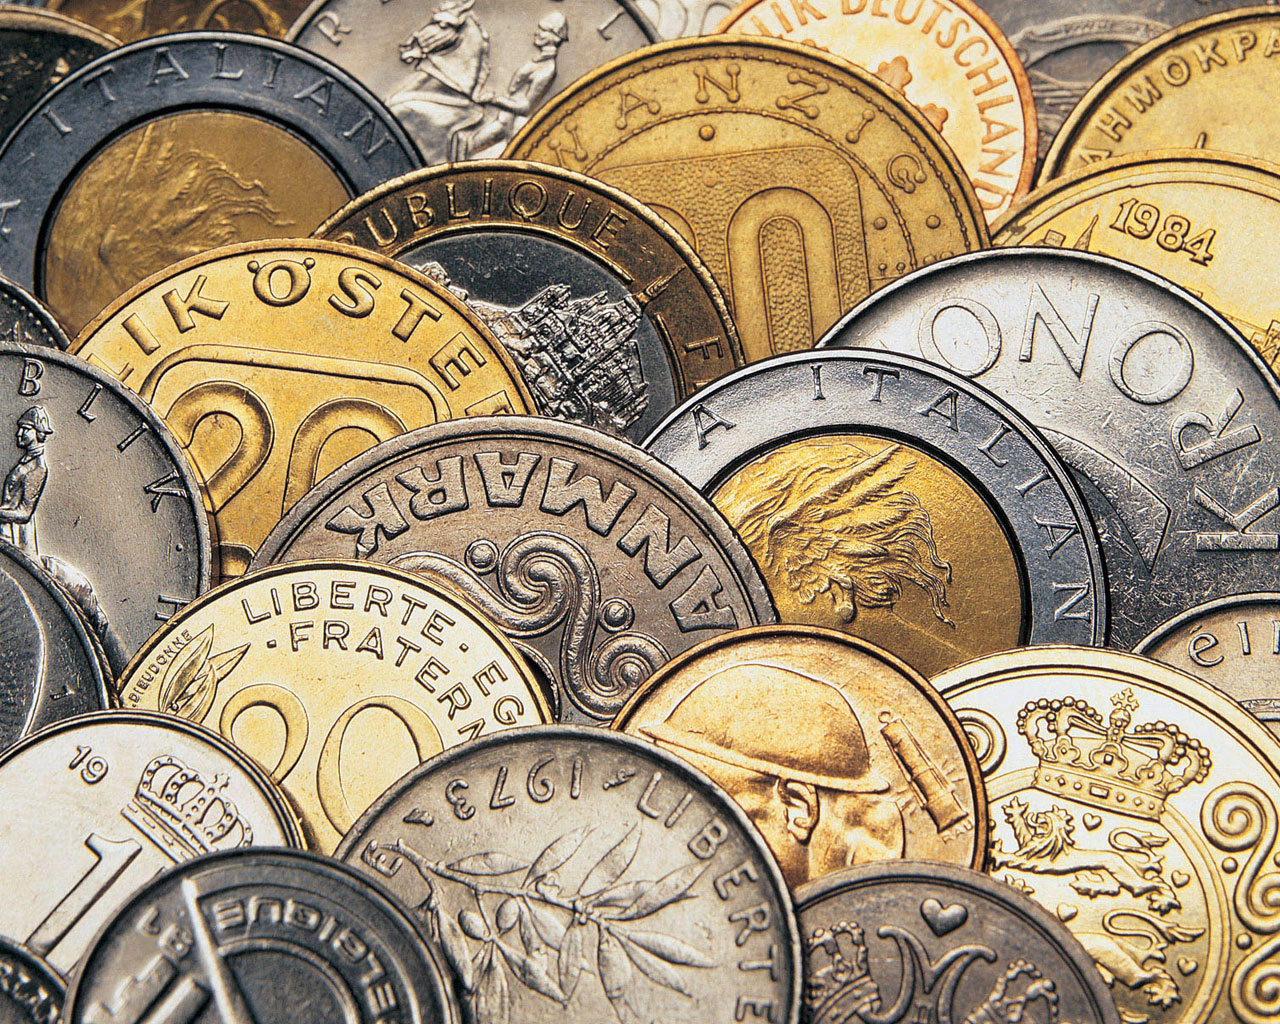 монеты, текстура, скачать фото, coins texture, фон, монеты, деньги